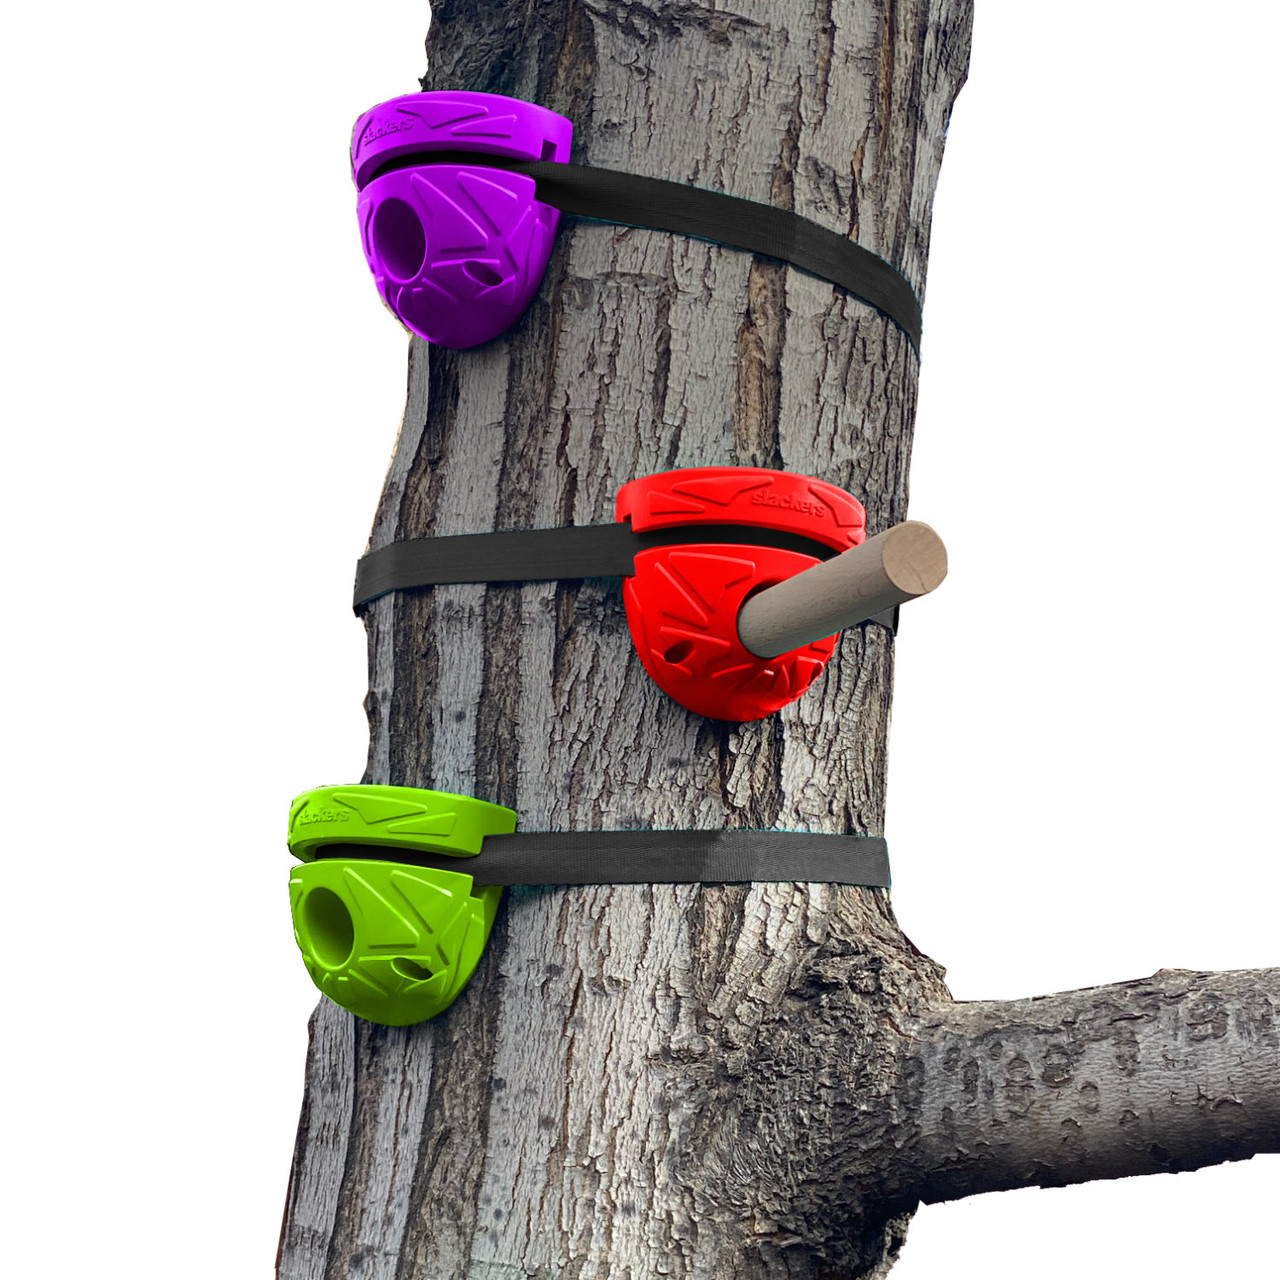 Slackers Peg Climbers Kit for Trees